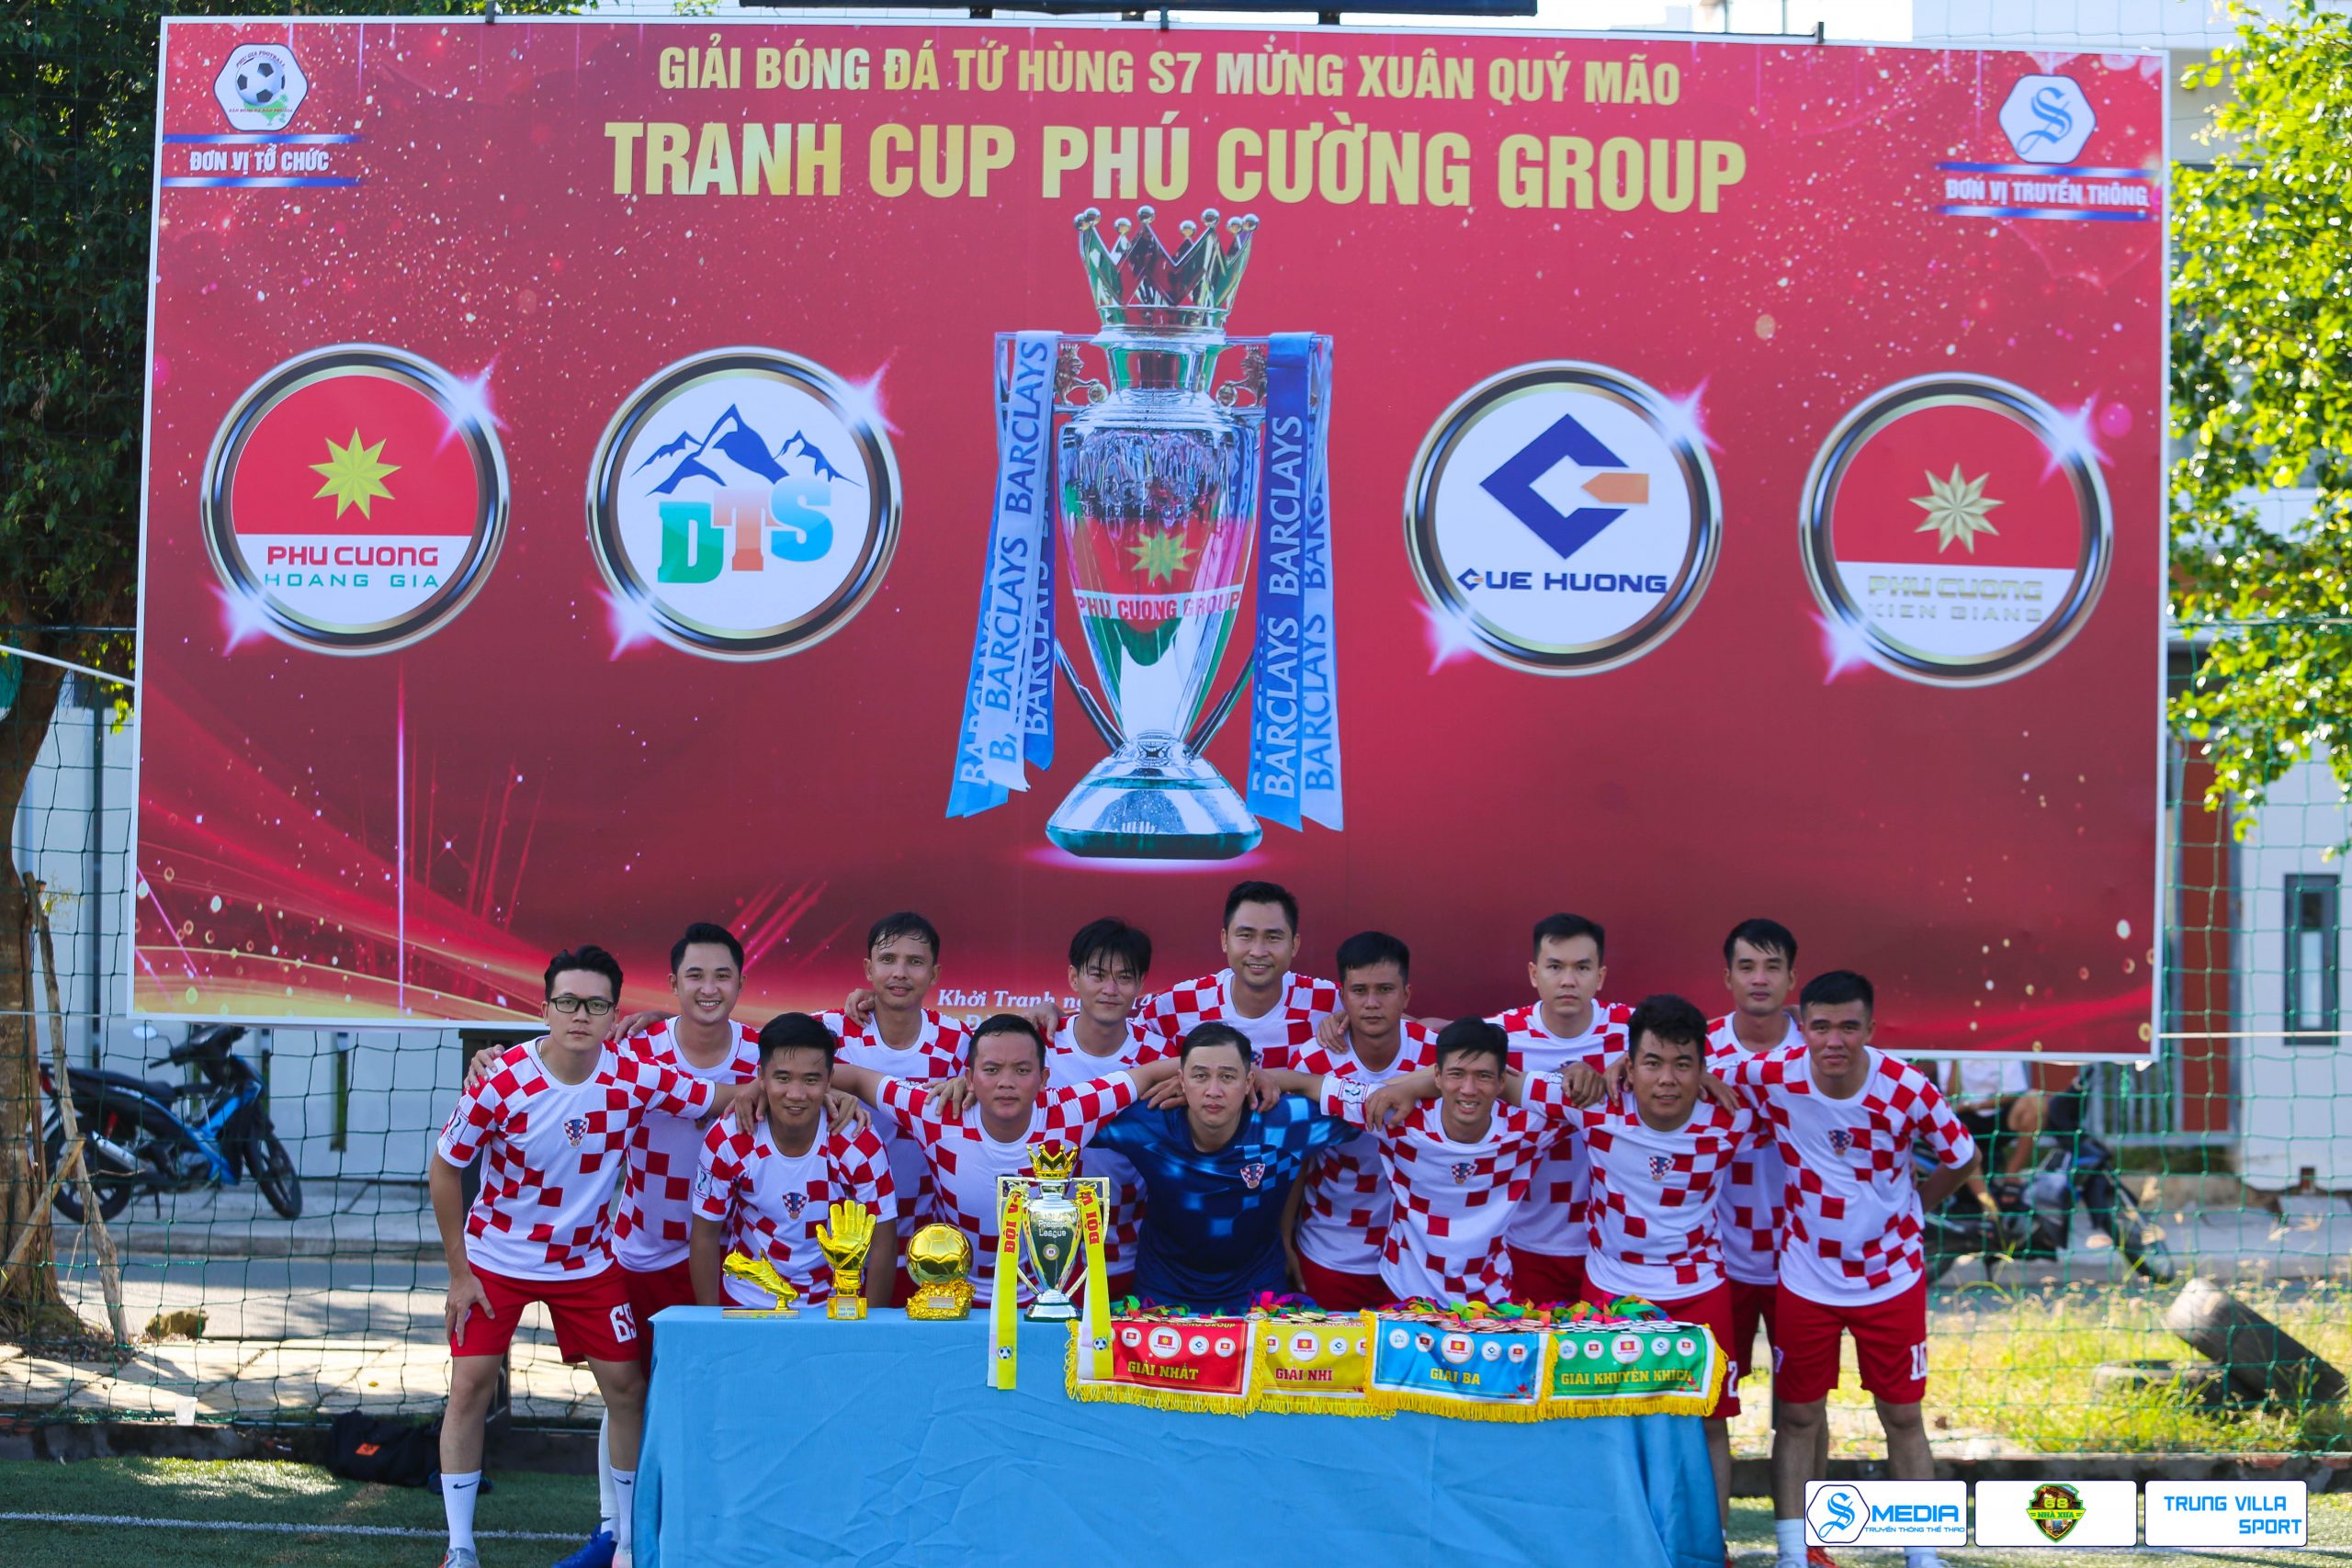 CĐCS Phú Cường Kiên Giang tổ chức Giải bóng đá Tứ Hùng mừng Xuân Quý Mão 2023